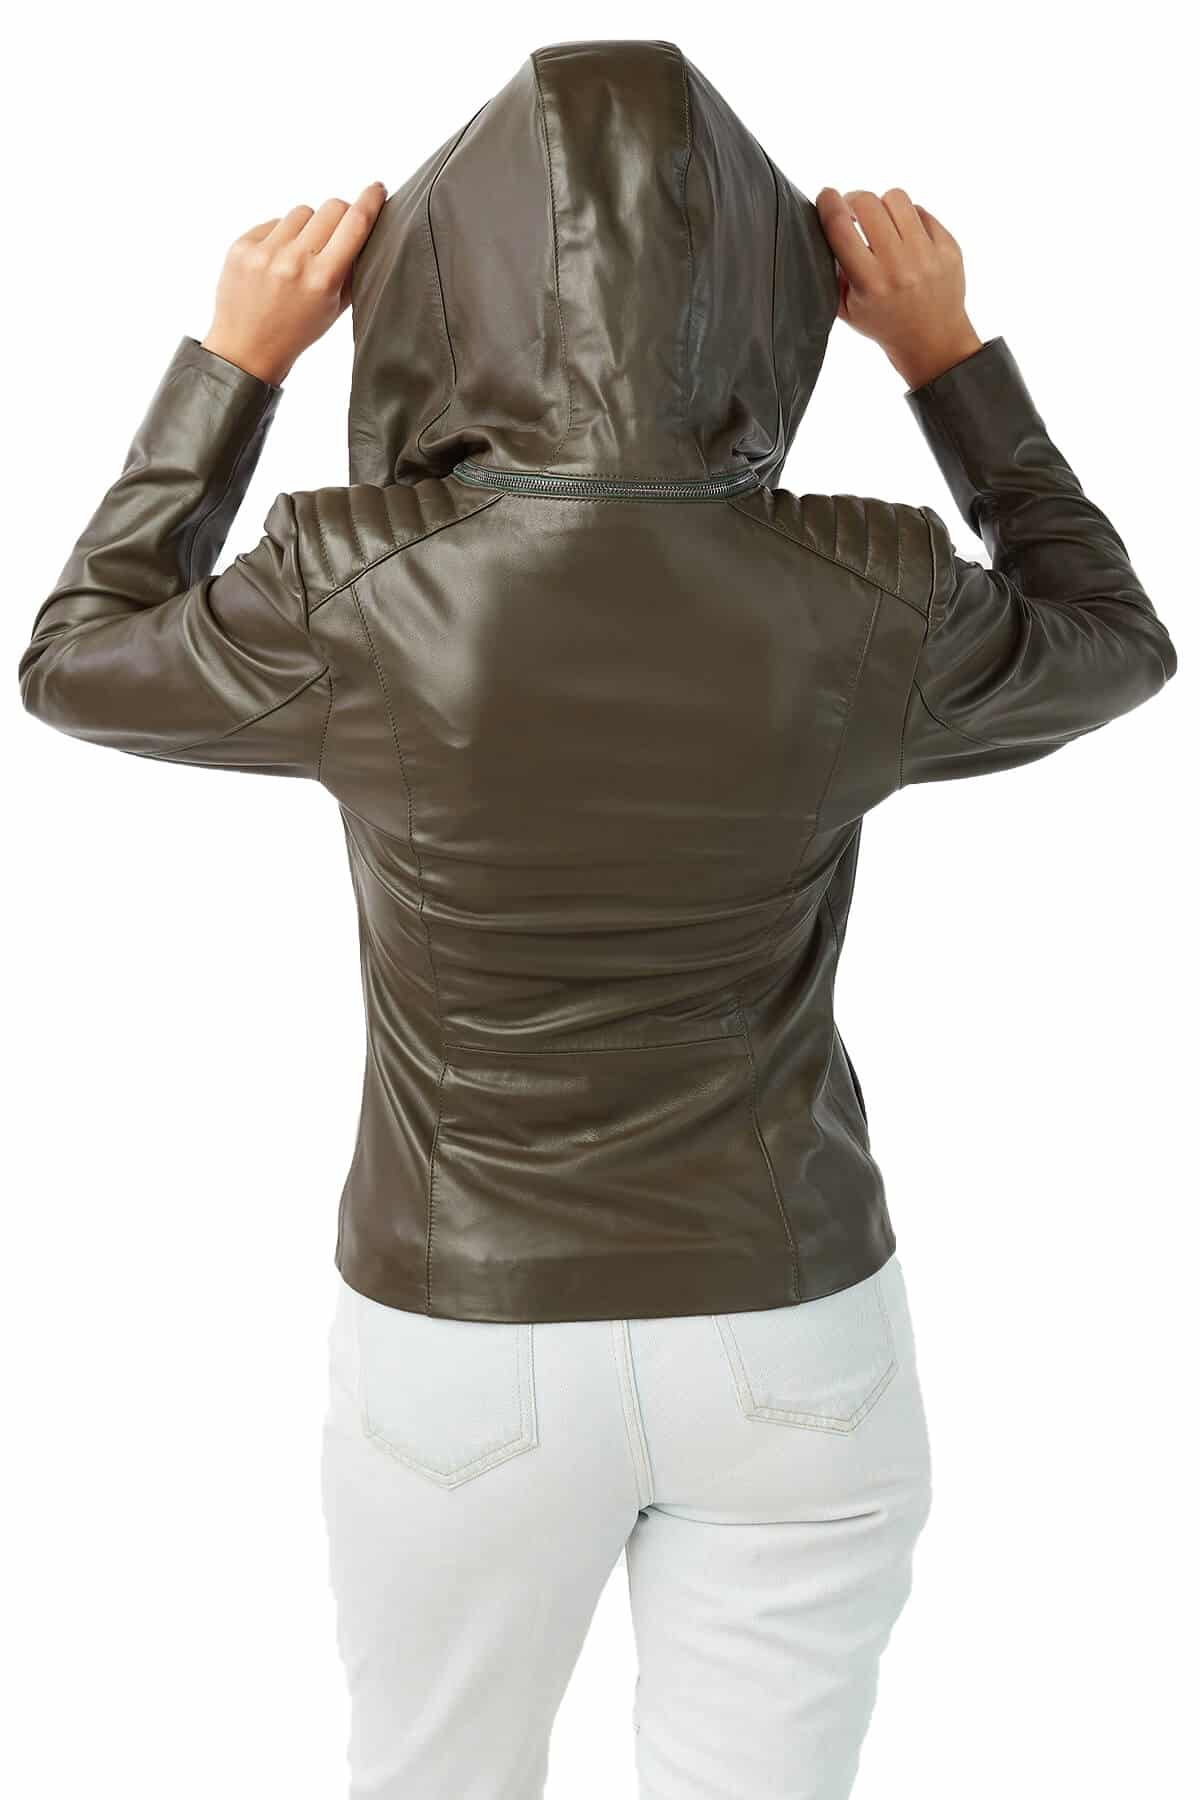 Herringbone Leather Long Coat - Ready-to-Wear 1AC2UK